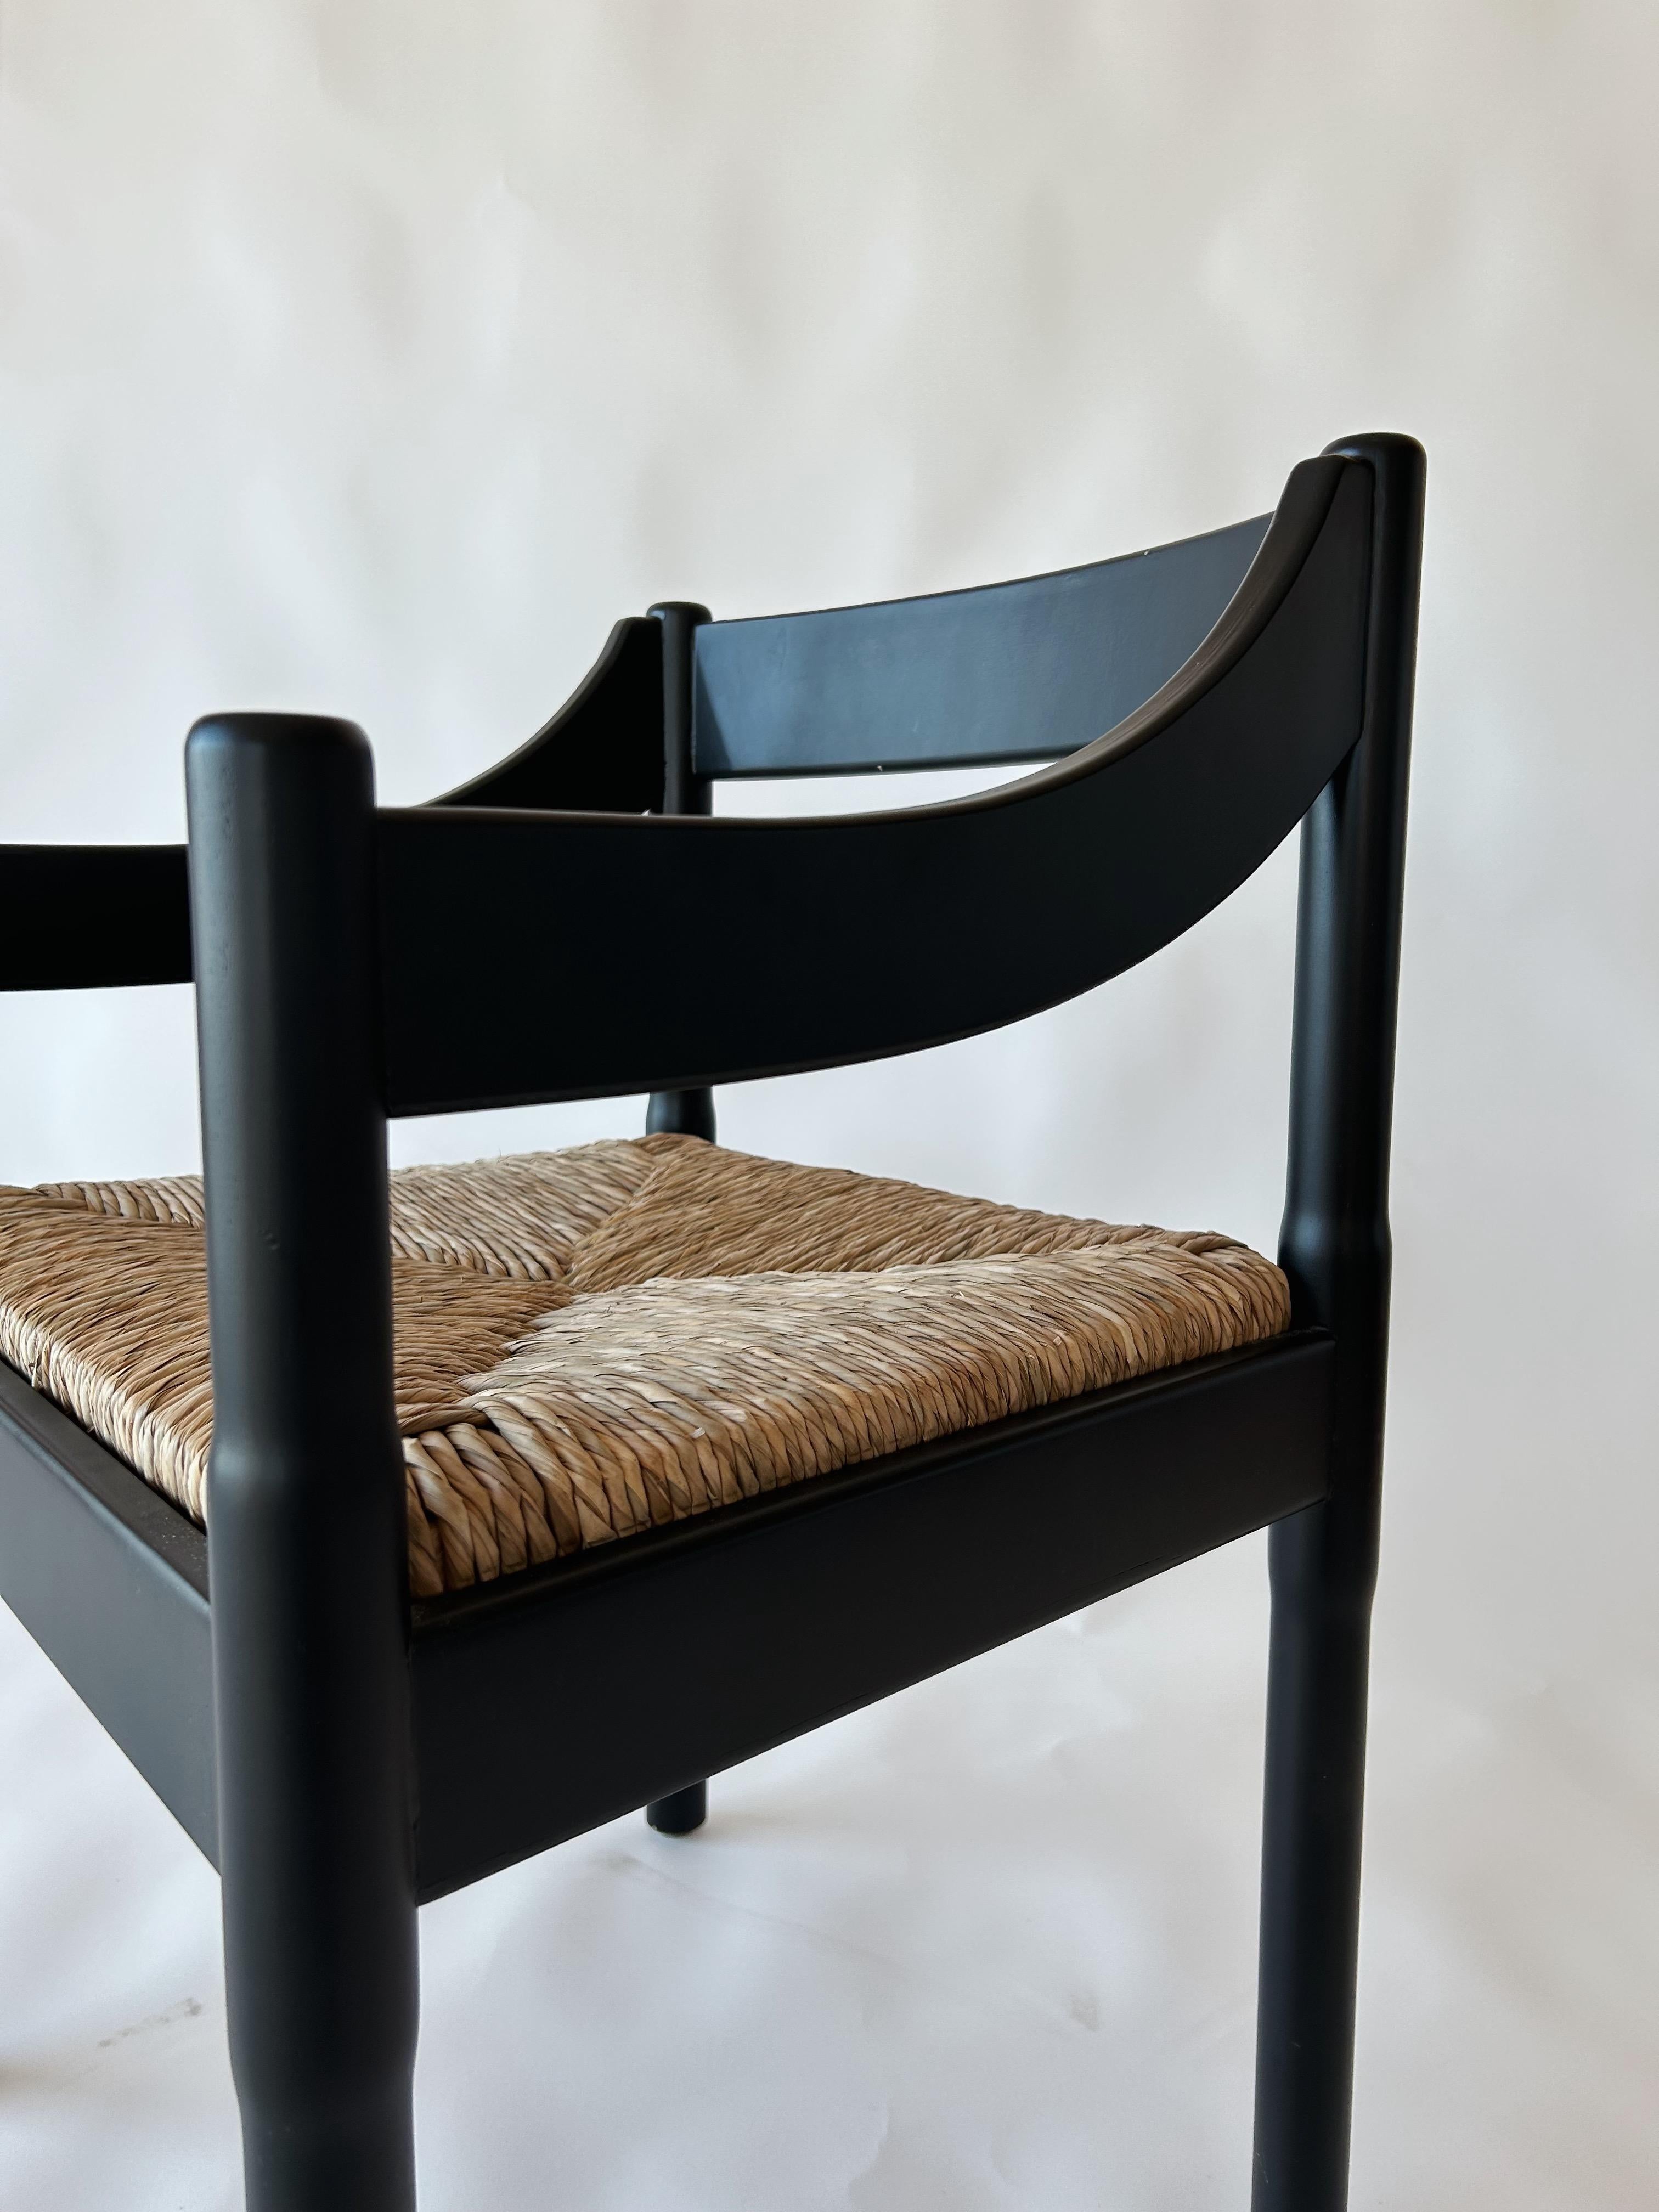 Carimate Sessel von Vico Magistretti für Cassina, 1960er Jahre, 2 Exemplare.
Ein Klassiker des italienischen Designs, die Carimate-Serie des Design-Maestros Vico Magistretti für Cassina.
Sie sind äußerst bequem, strapazierfähig und eignen sich